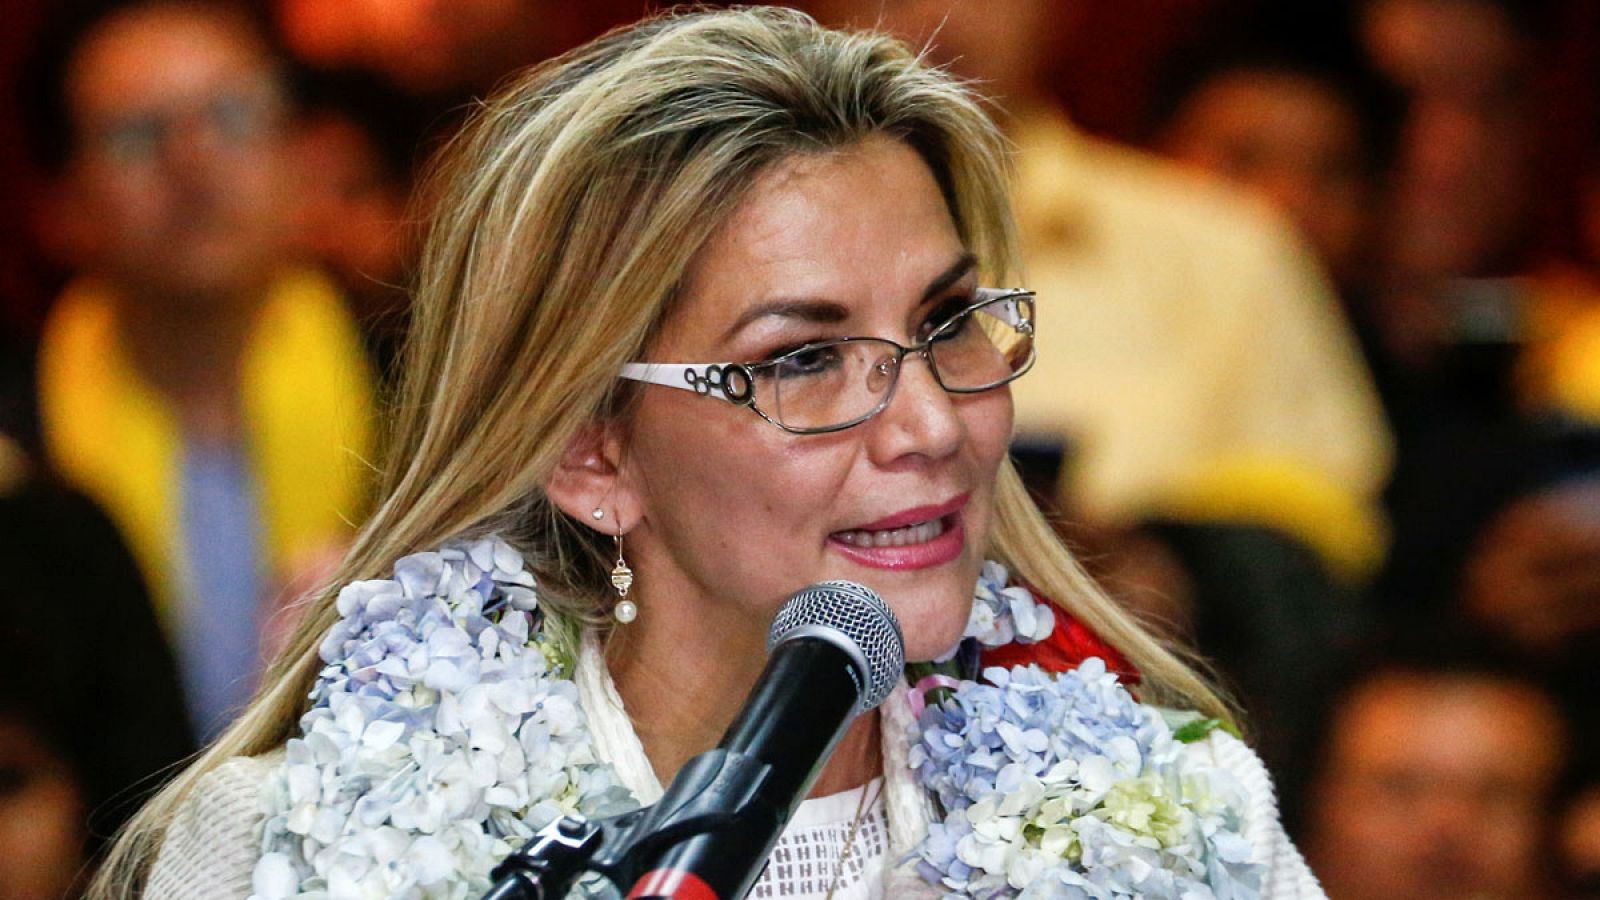 La presidenta interina de Bolivia, Jeanine Áñez,  en una imagen del viernes 24 de enero de 2020.